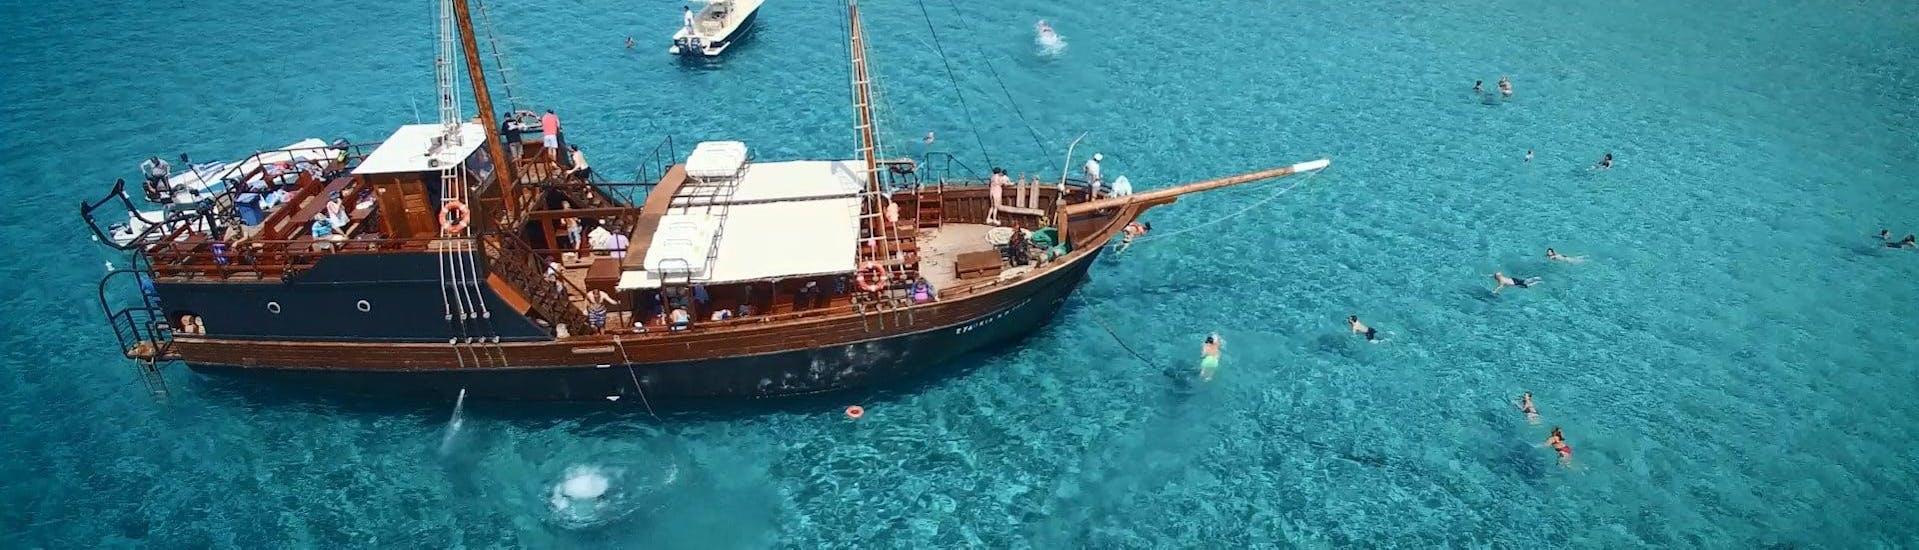 Bild des Pirtäenbootes, das für die Bootsfahrten von Cretan Daily Cruises - Chrissi Islands verwendet wird.